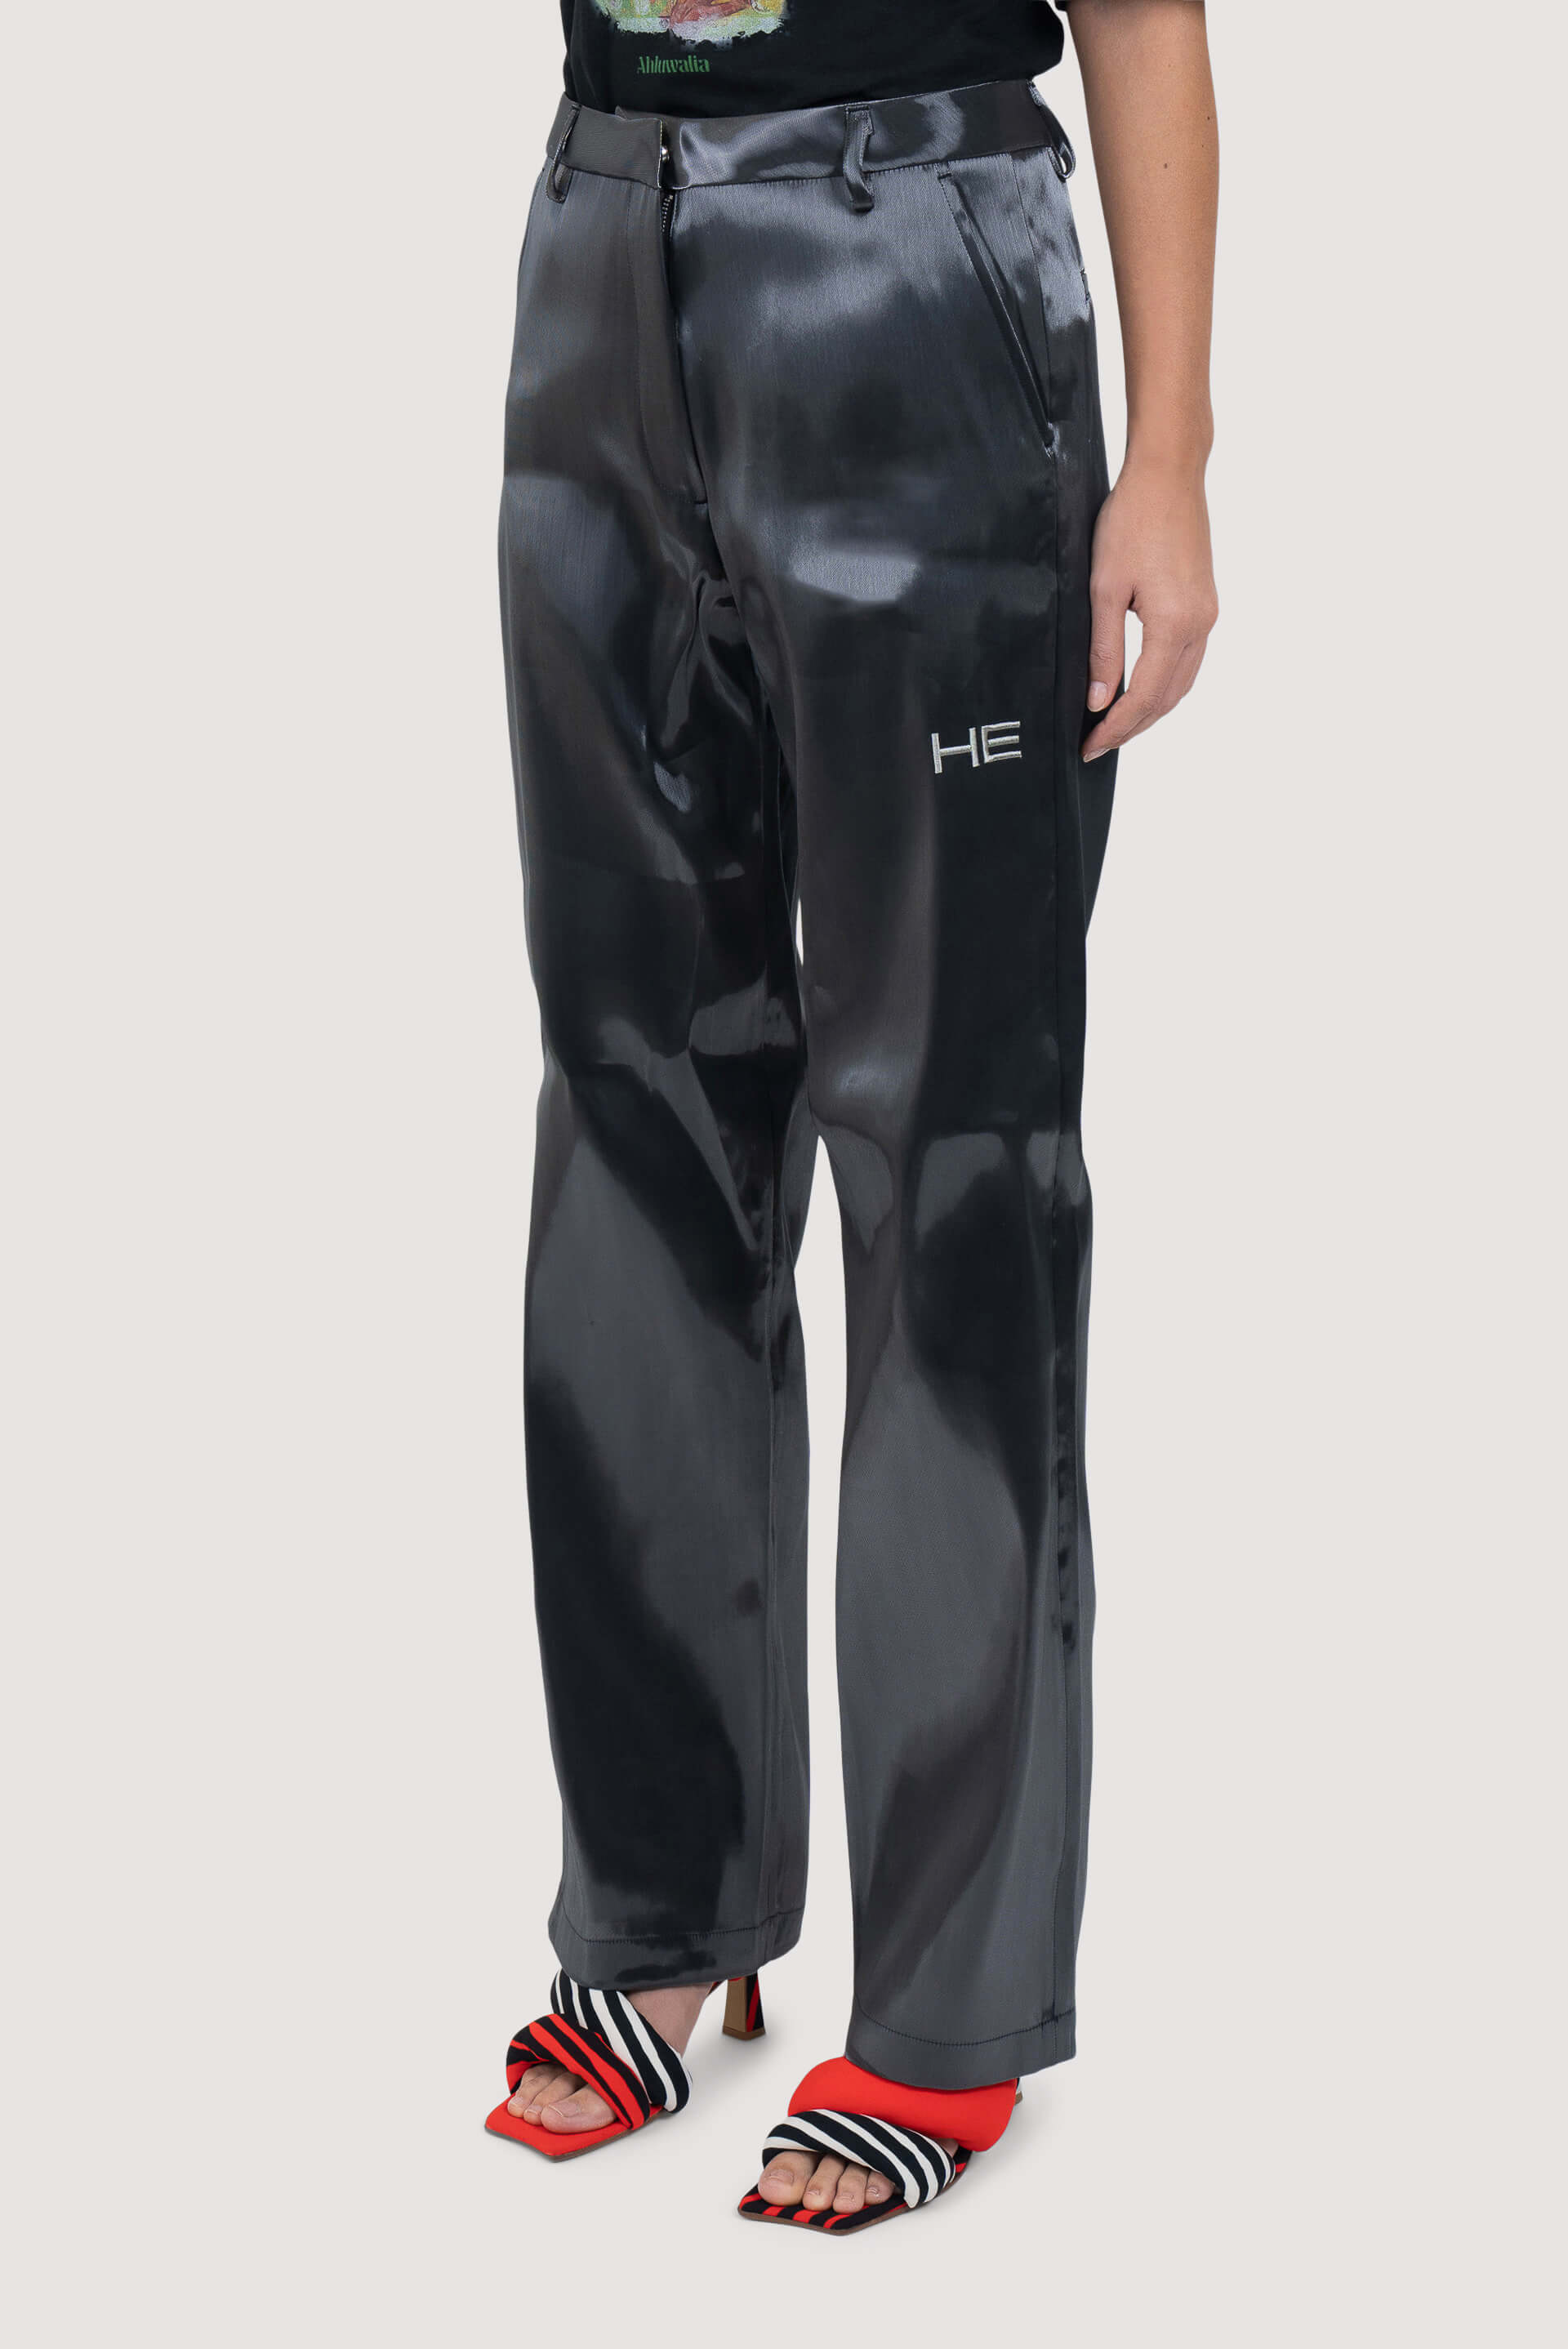 W2C] Heliot Emil Liquid Metal pants : r/FashionReps